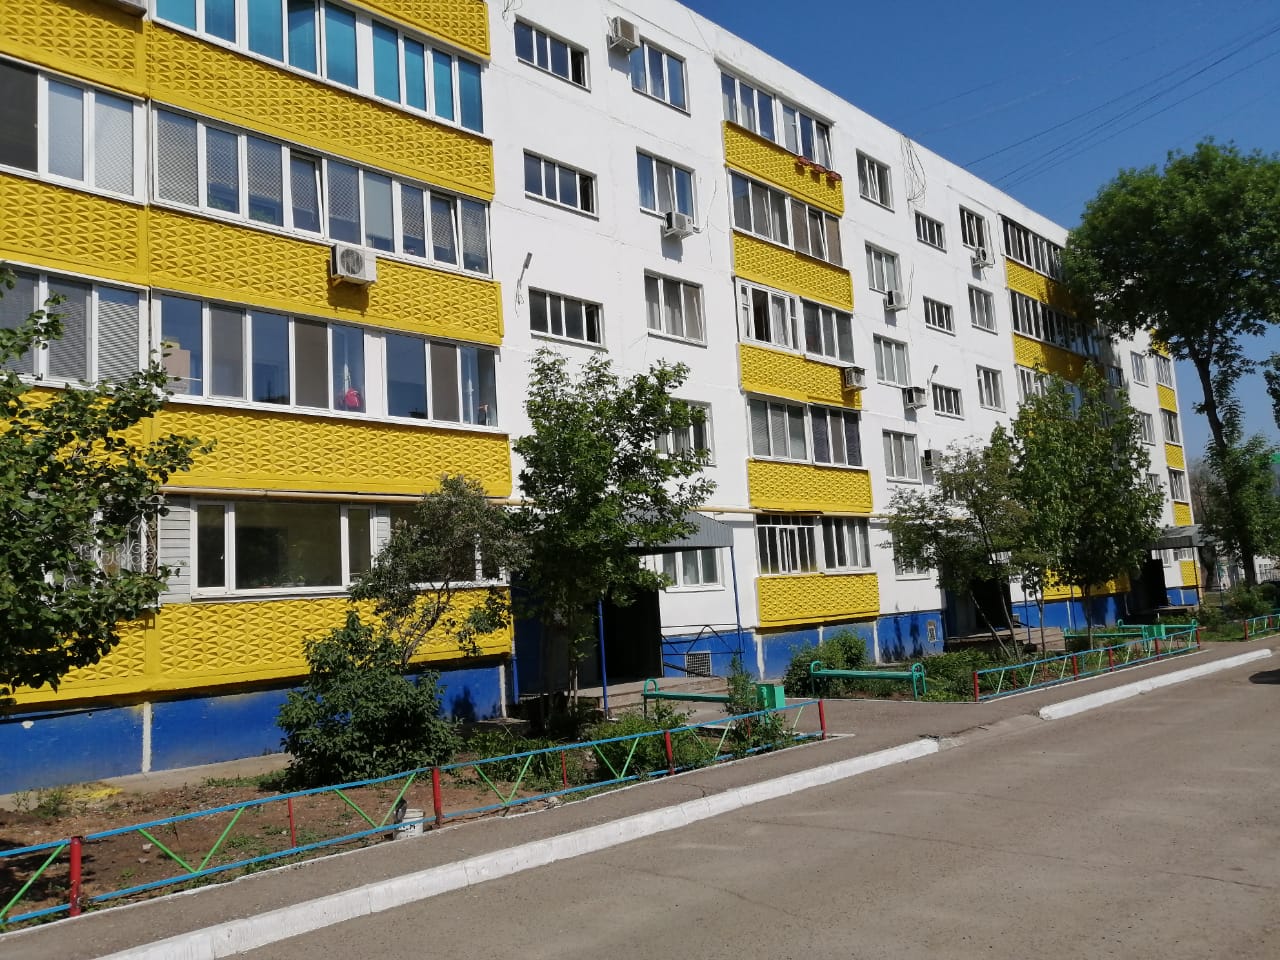 Дом по ул. Салмышская, 31/1 существенно выделяется на фоне традиционно серых многоэтажек Оренбурга.